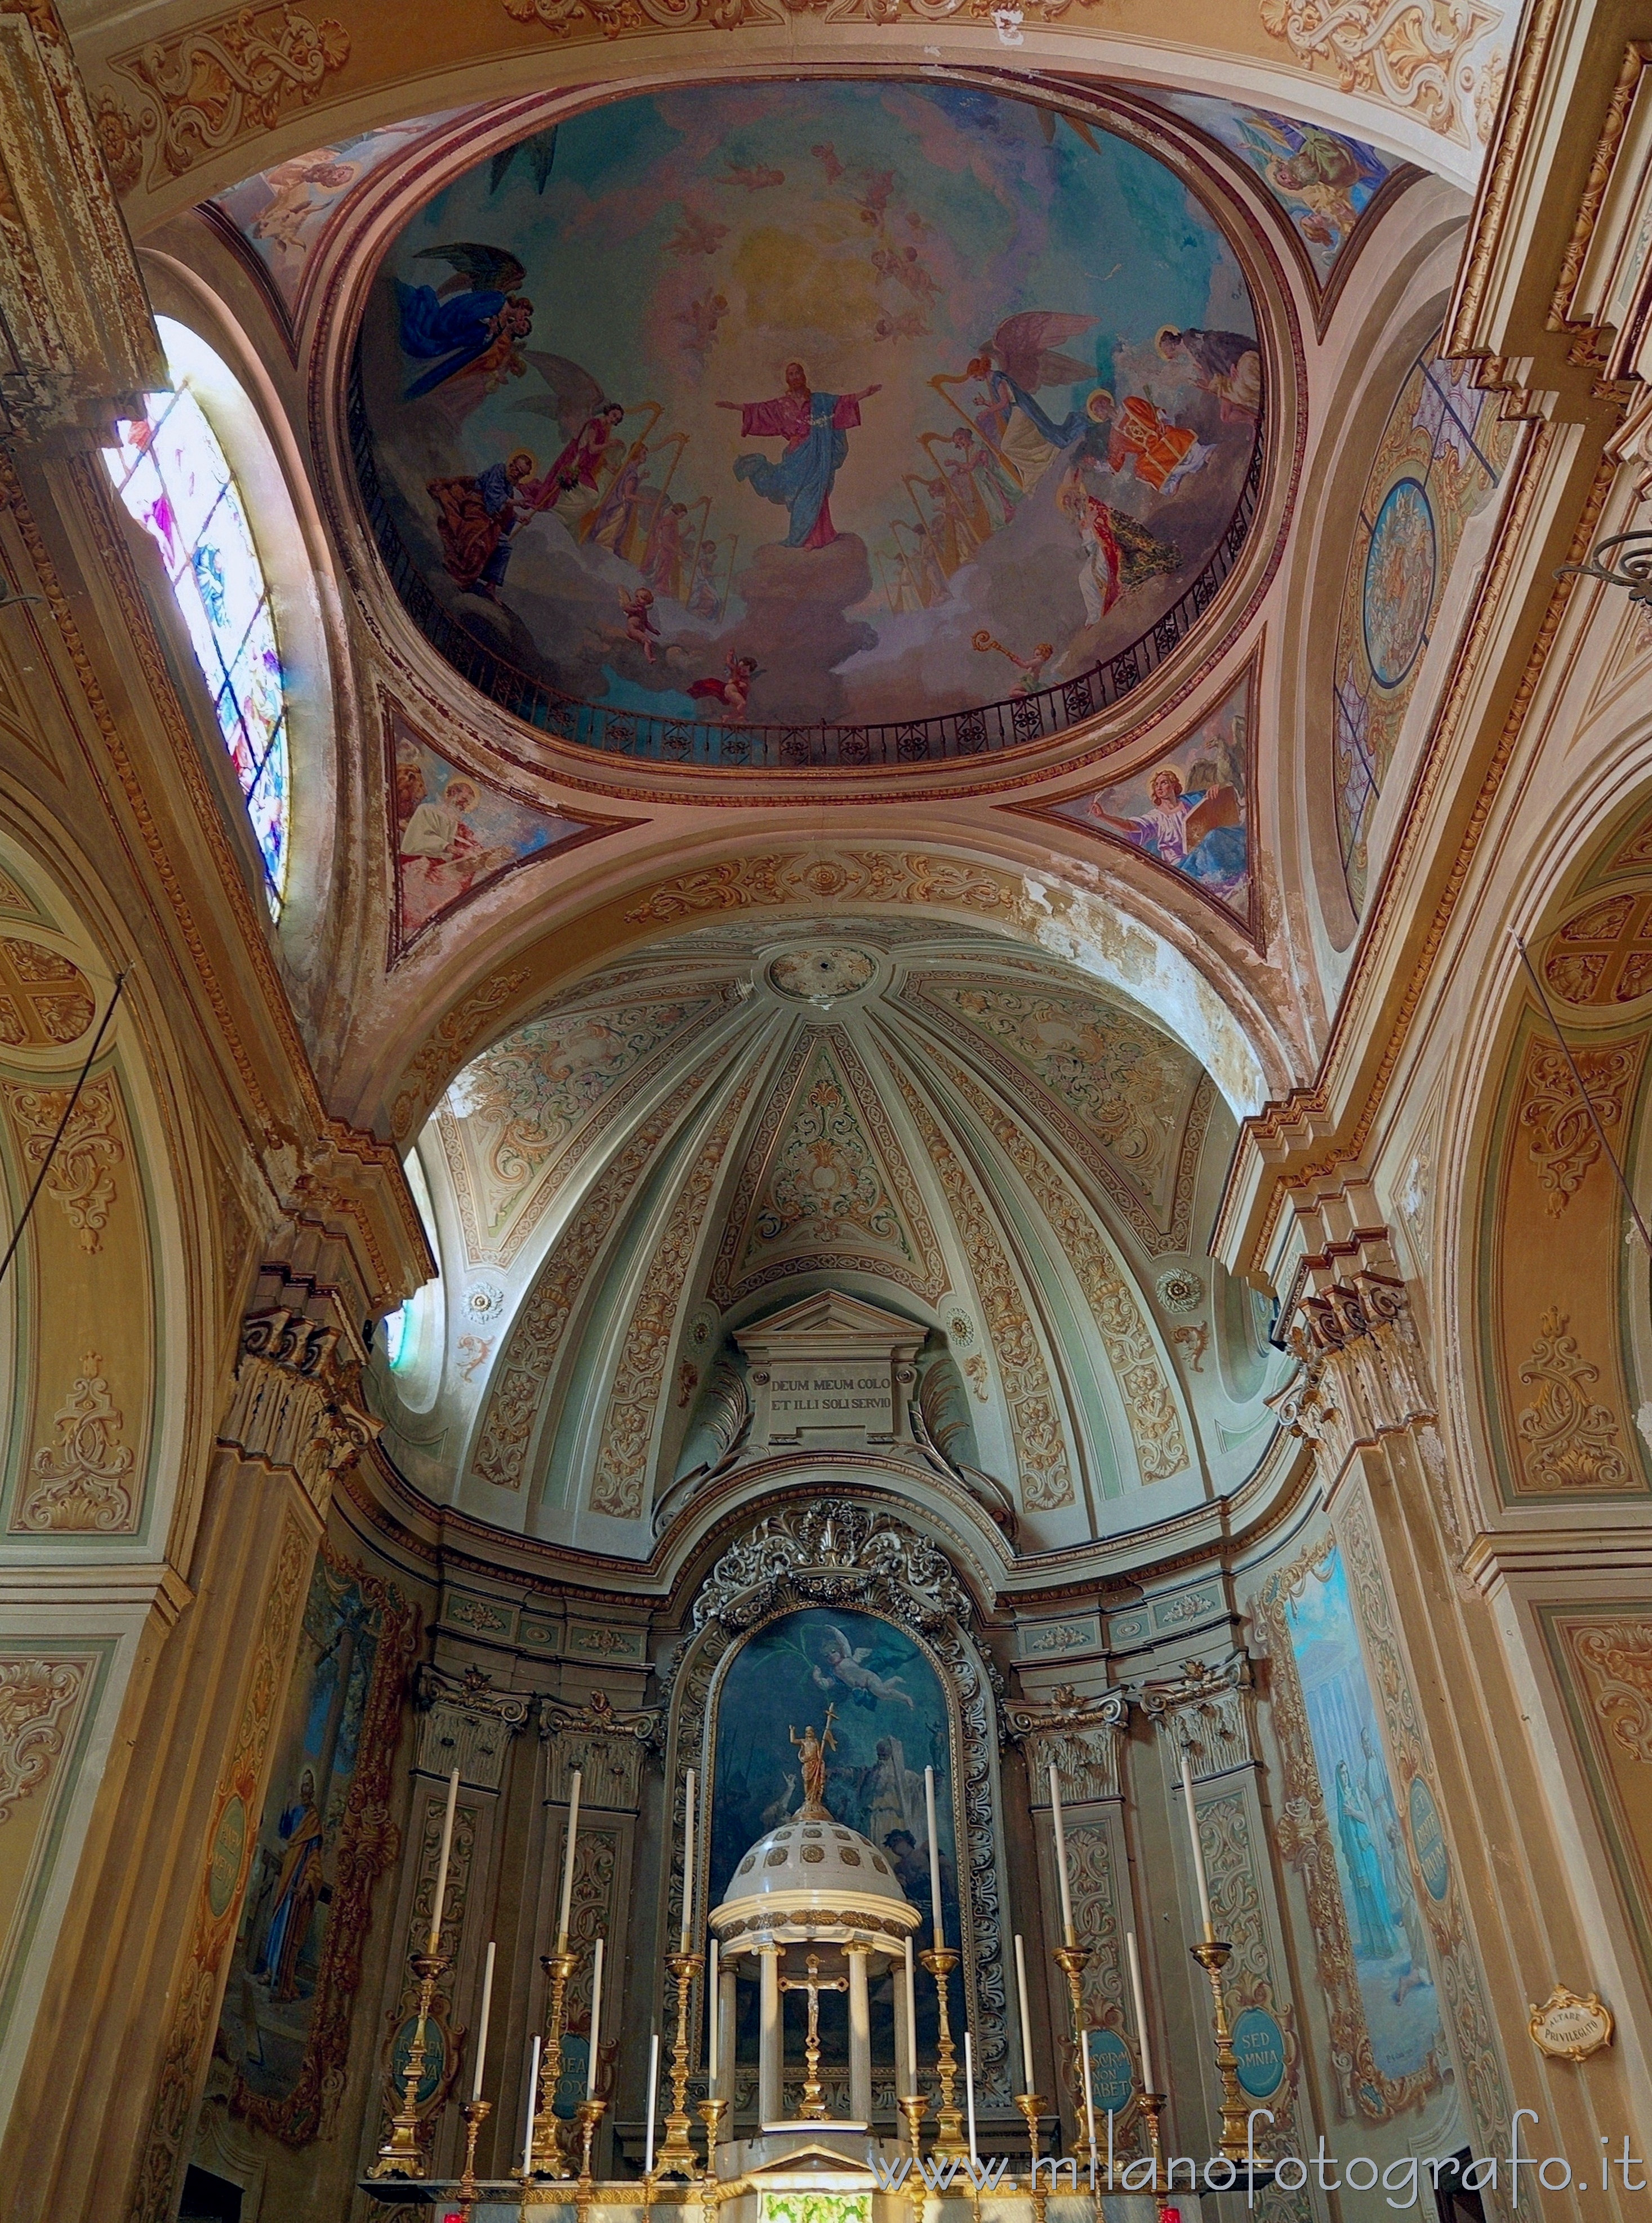 Andorno Micca (Biella, Italy): Apse of the Church of San Lorenzo - Andorno Micca (Biella, Italy)